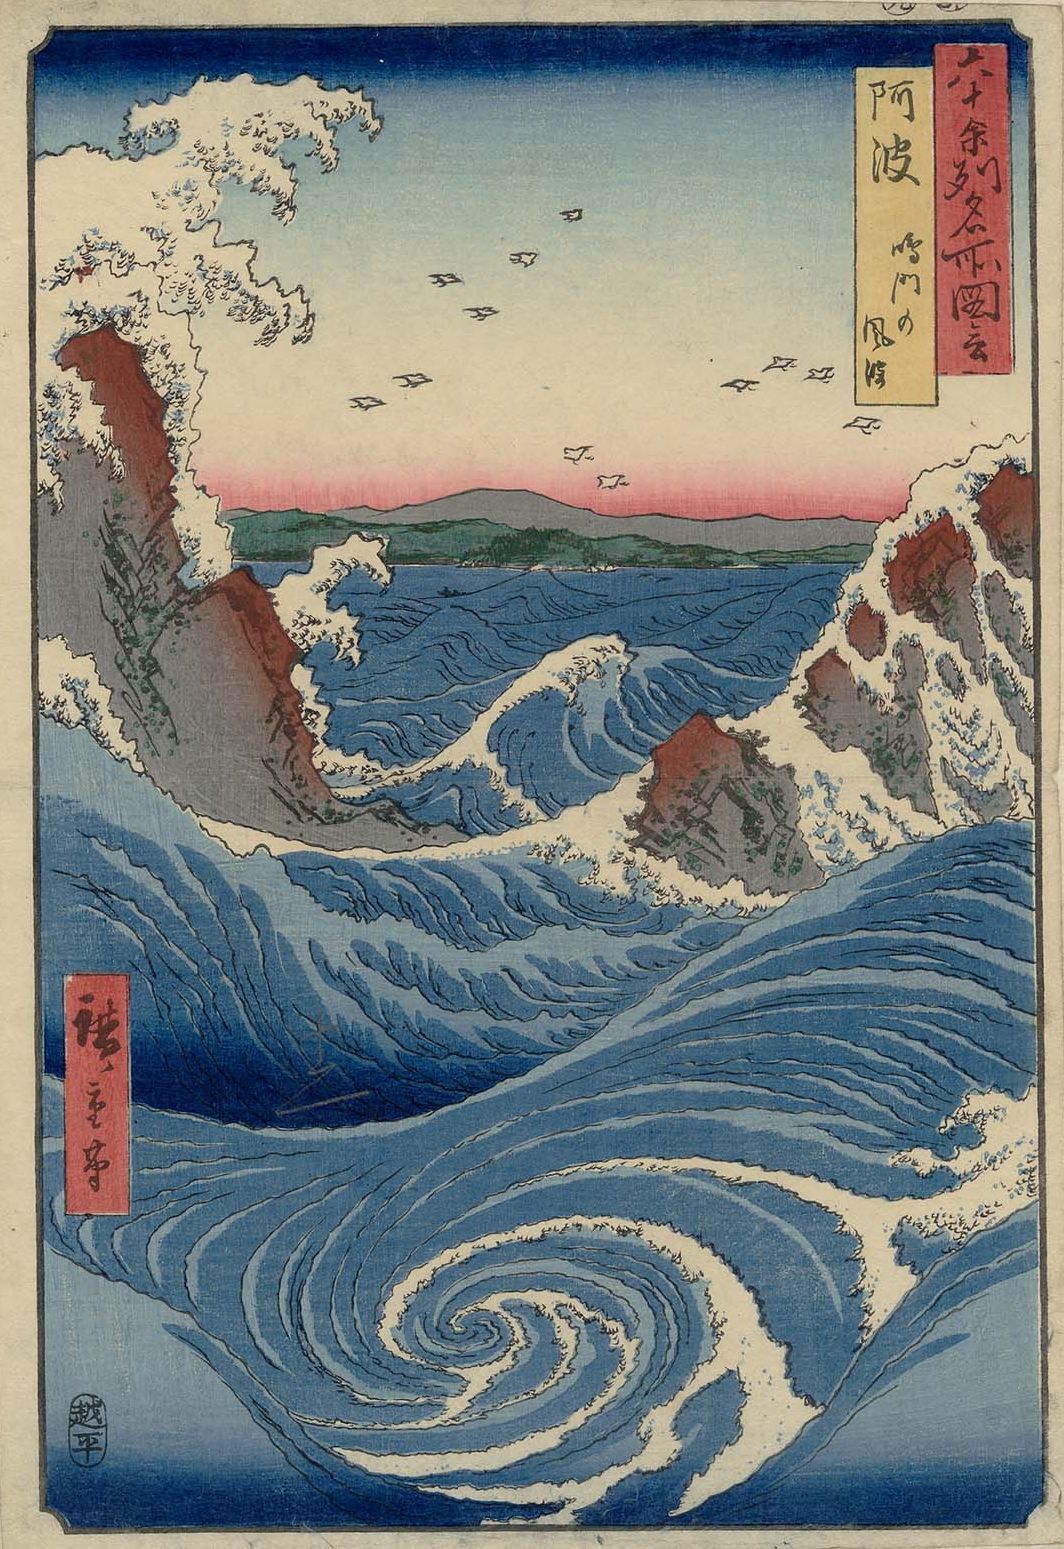 Le tourbillon de Naruto by  Hiroshige - 1856 - 35.6 × 24.4 cm 